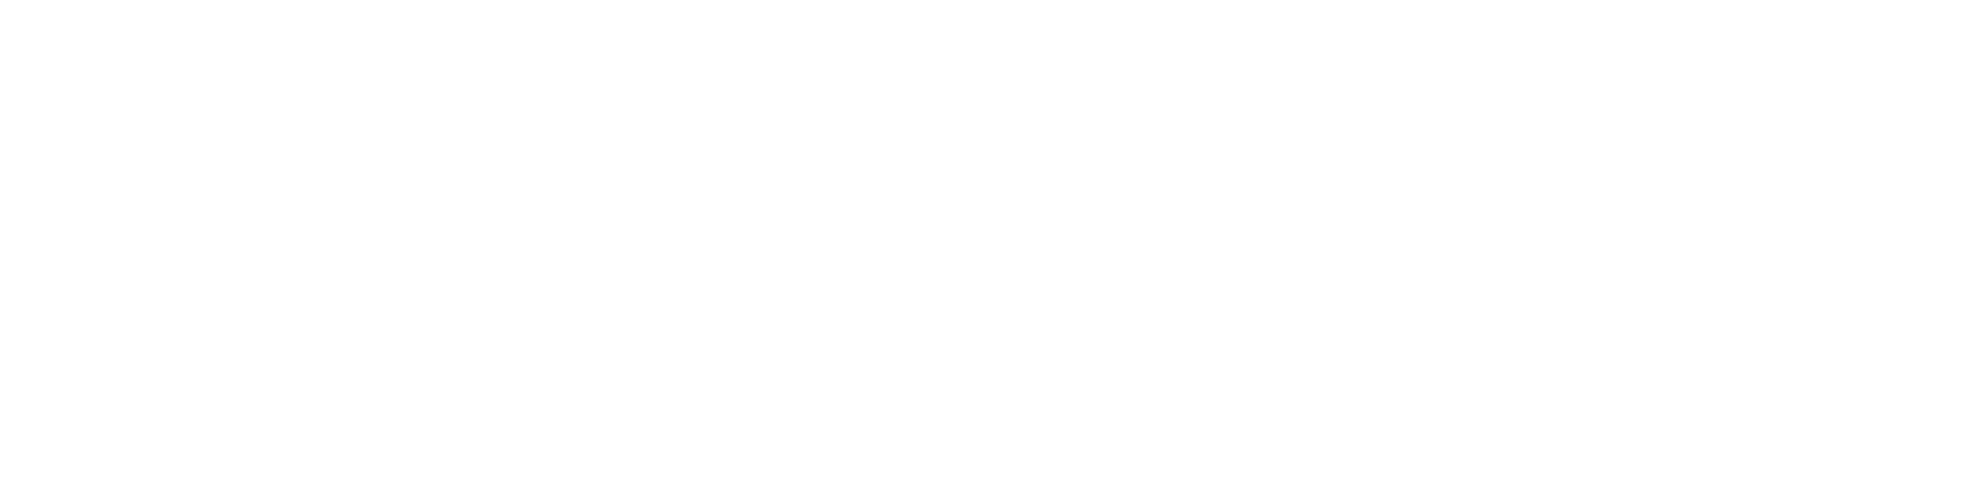 The Surrey Probate Practice